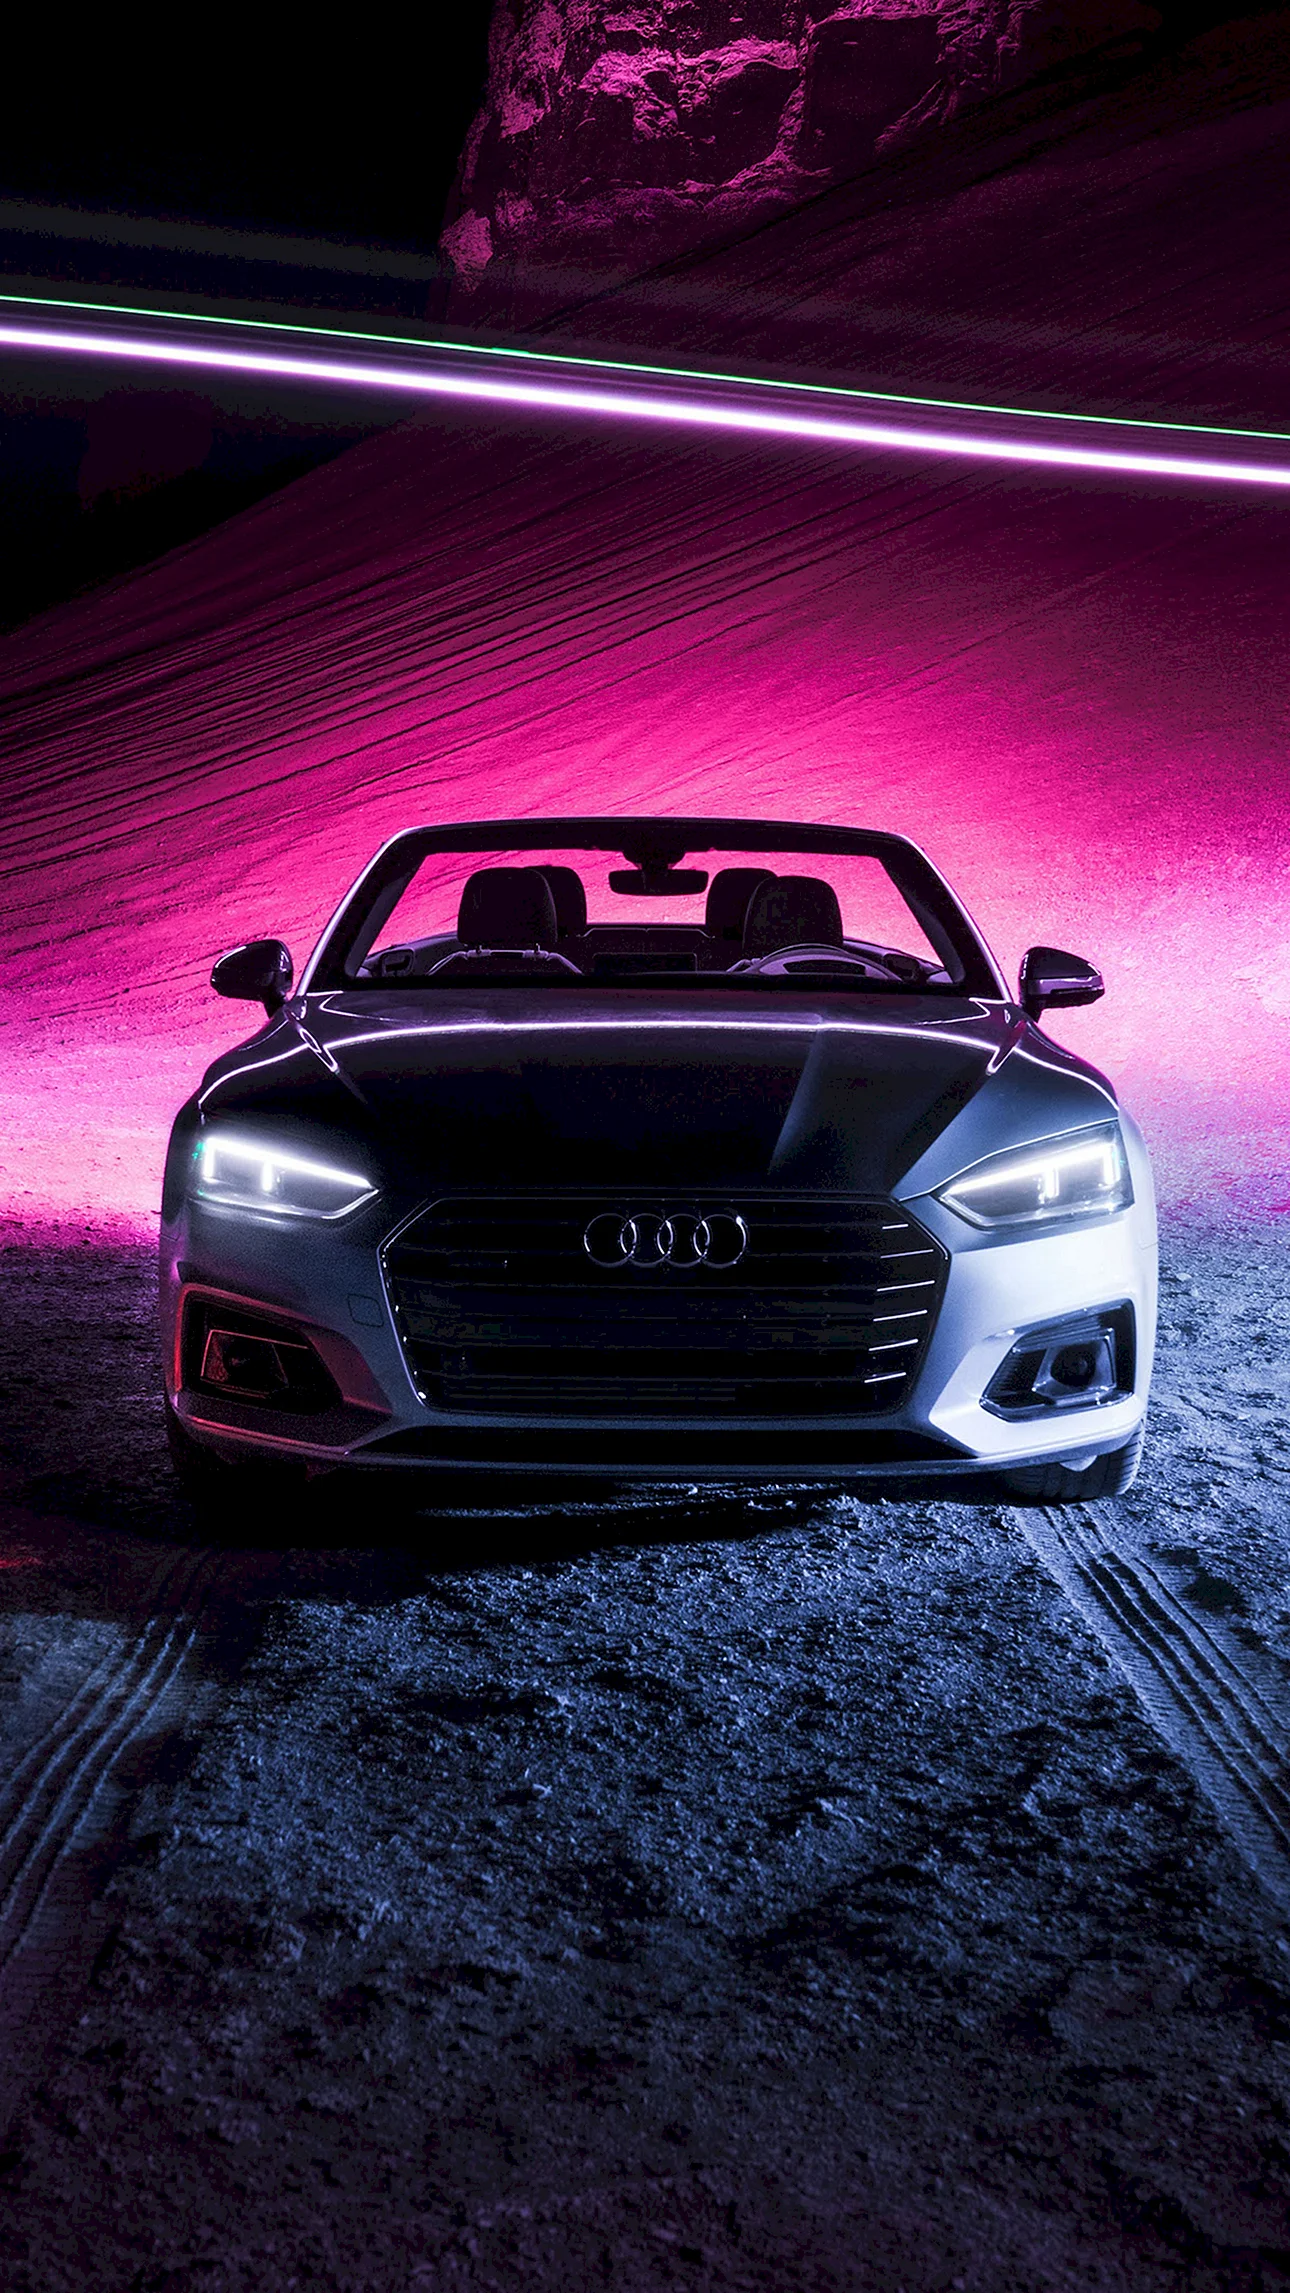 Audi 4K Wallpaper For iPhone